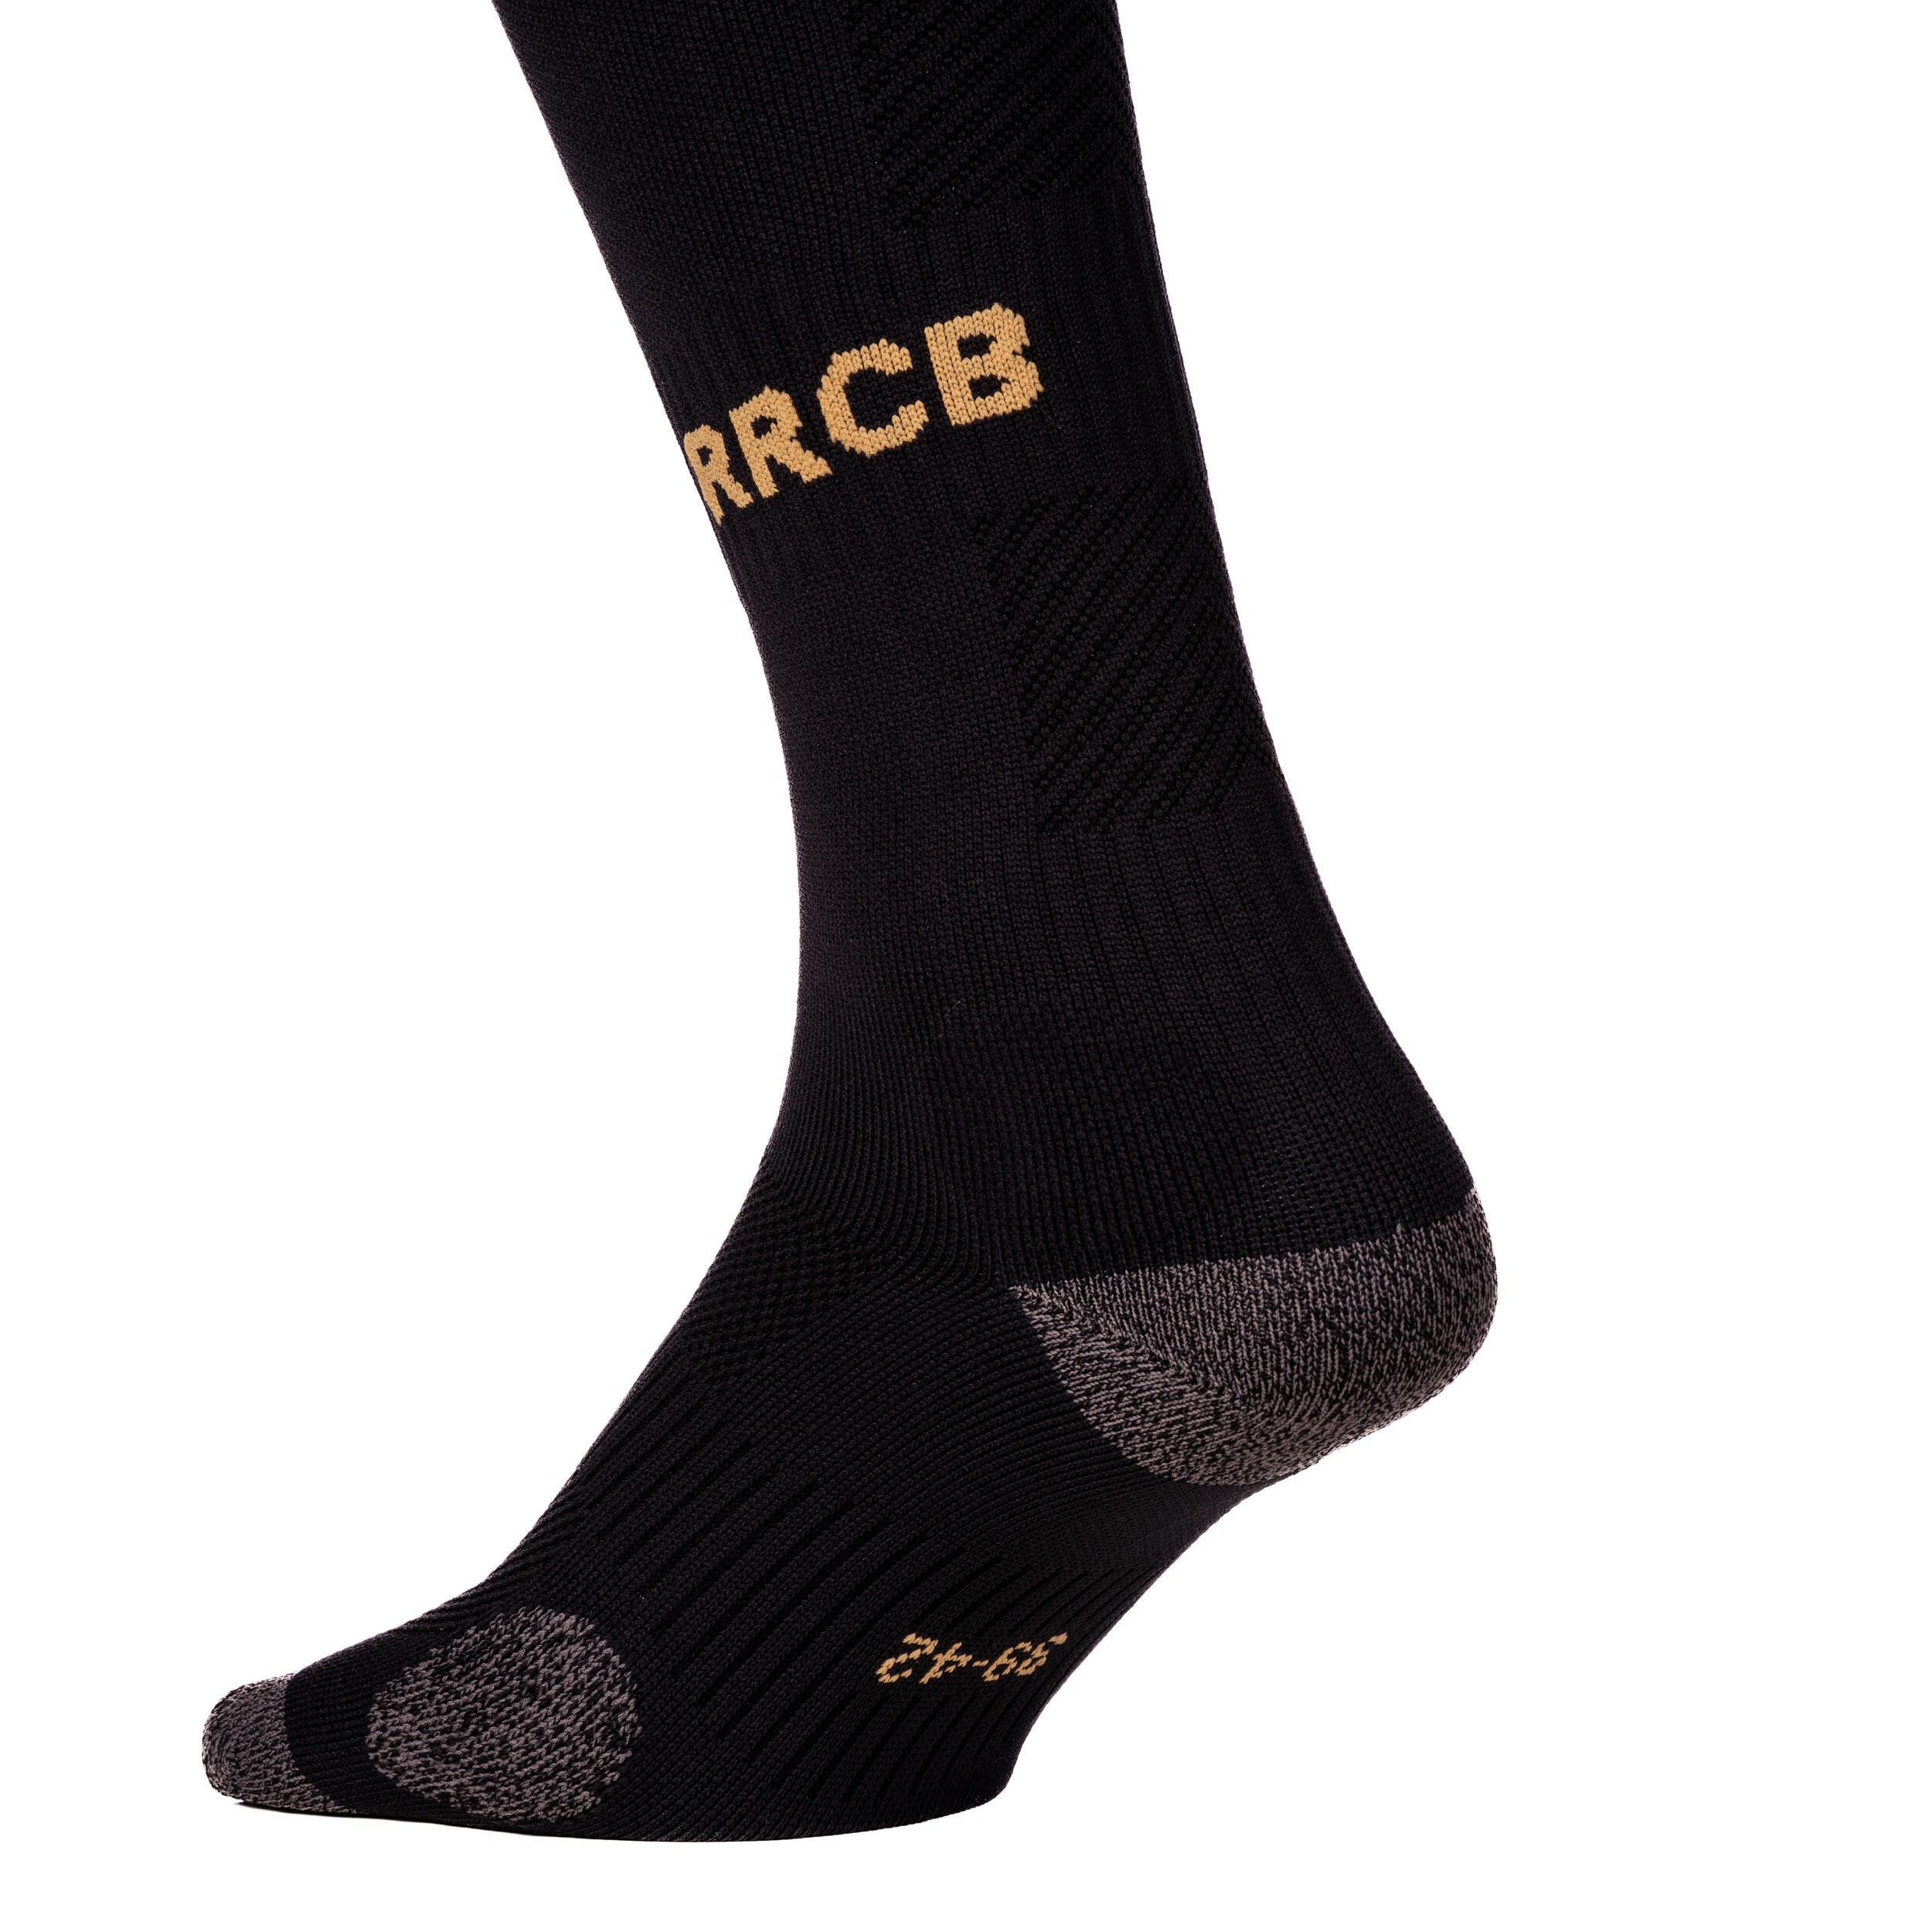 Adult Socks FH900 Racing - Black 3/4